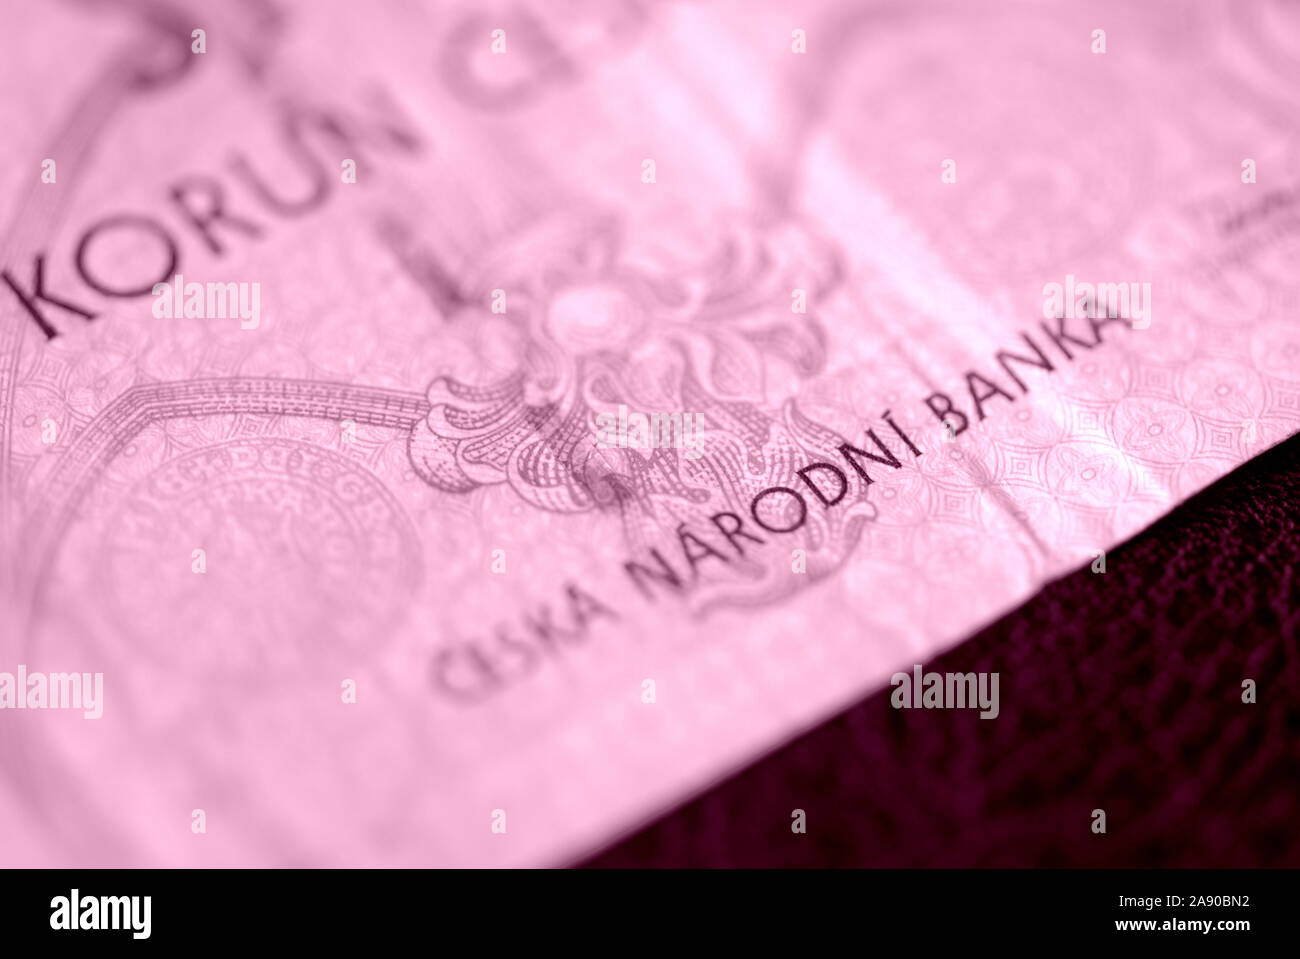 Fragment d'un billet de banque tchèque dans une centaine de couronnes libre. Contexte de l'argent aux tons de couleur rose Banque D'Images